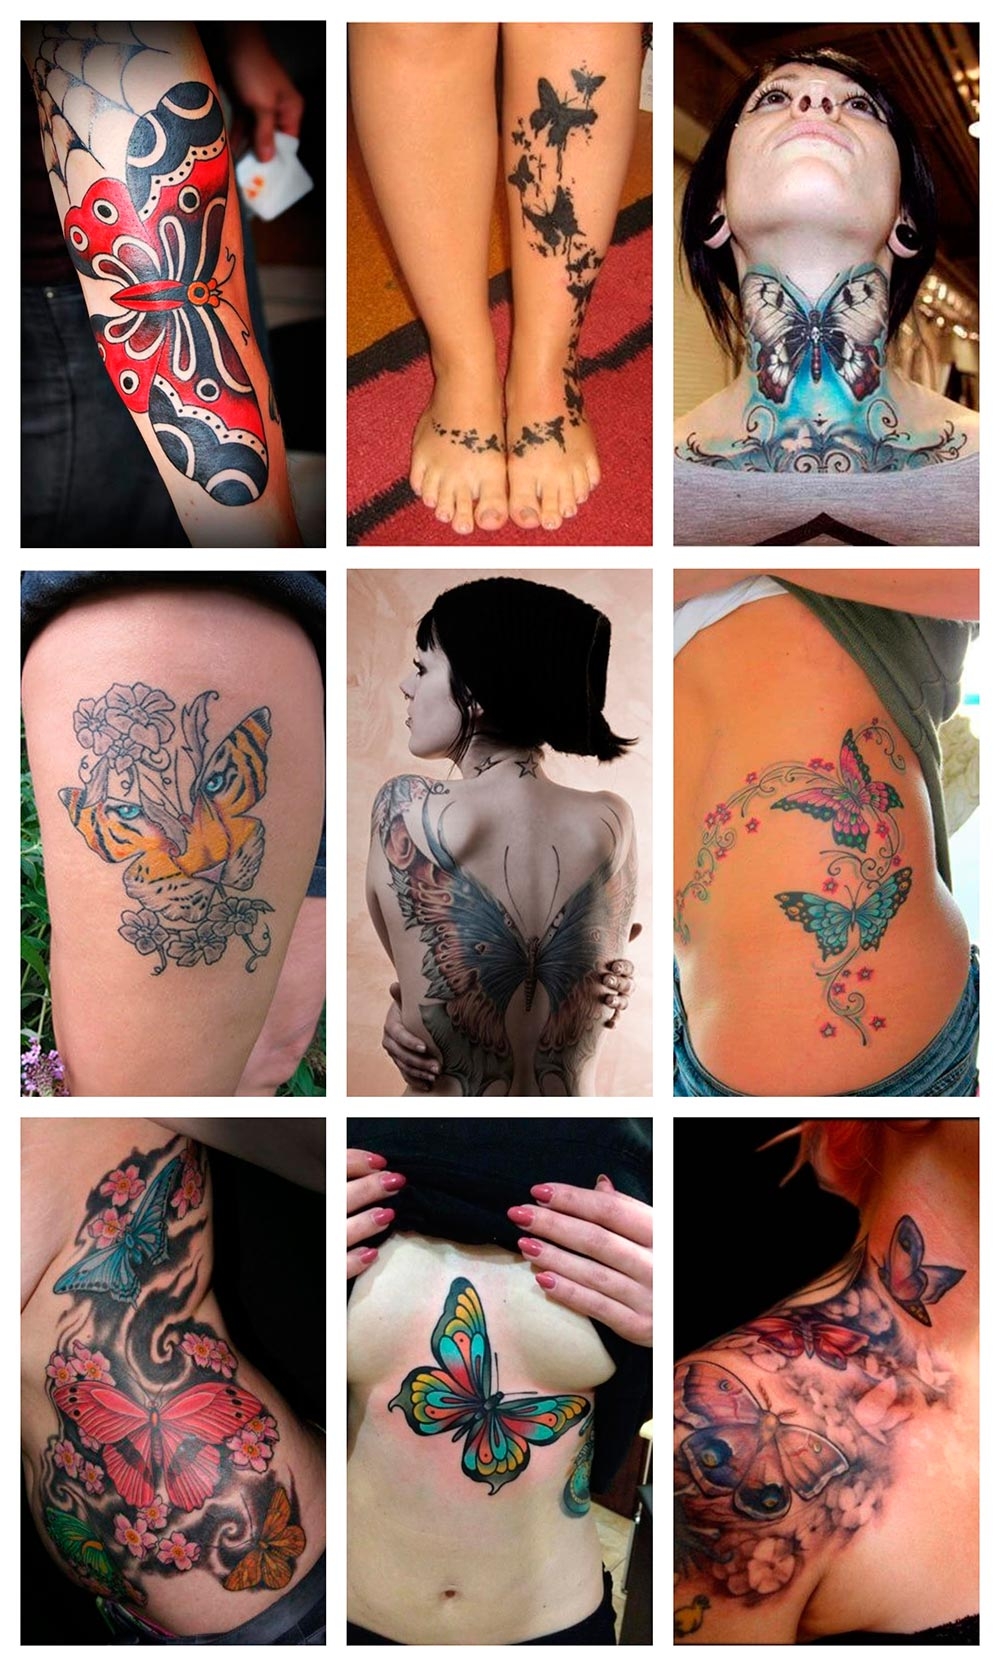 Los tatuajes más sorprendes y llamativos de mariposas